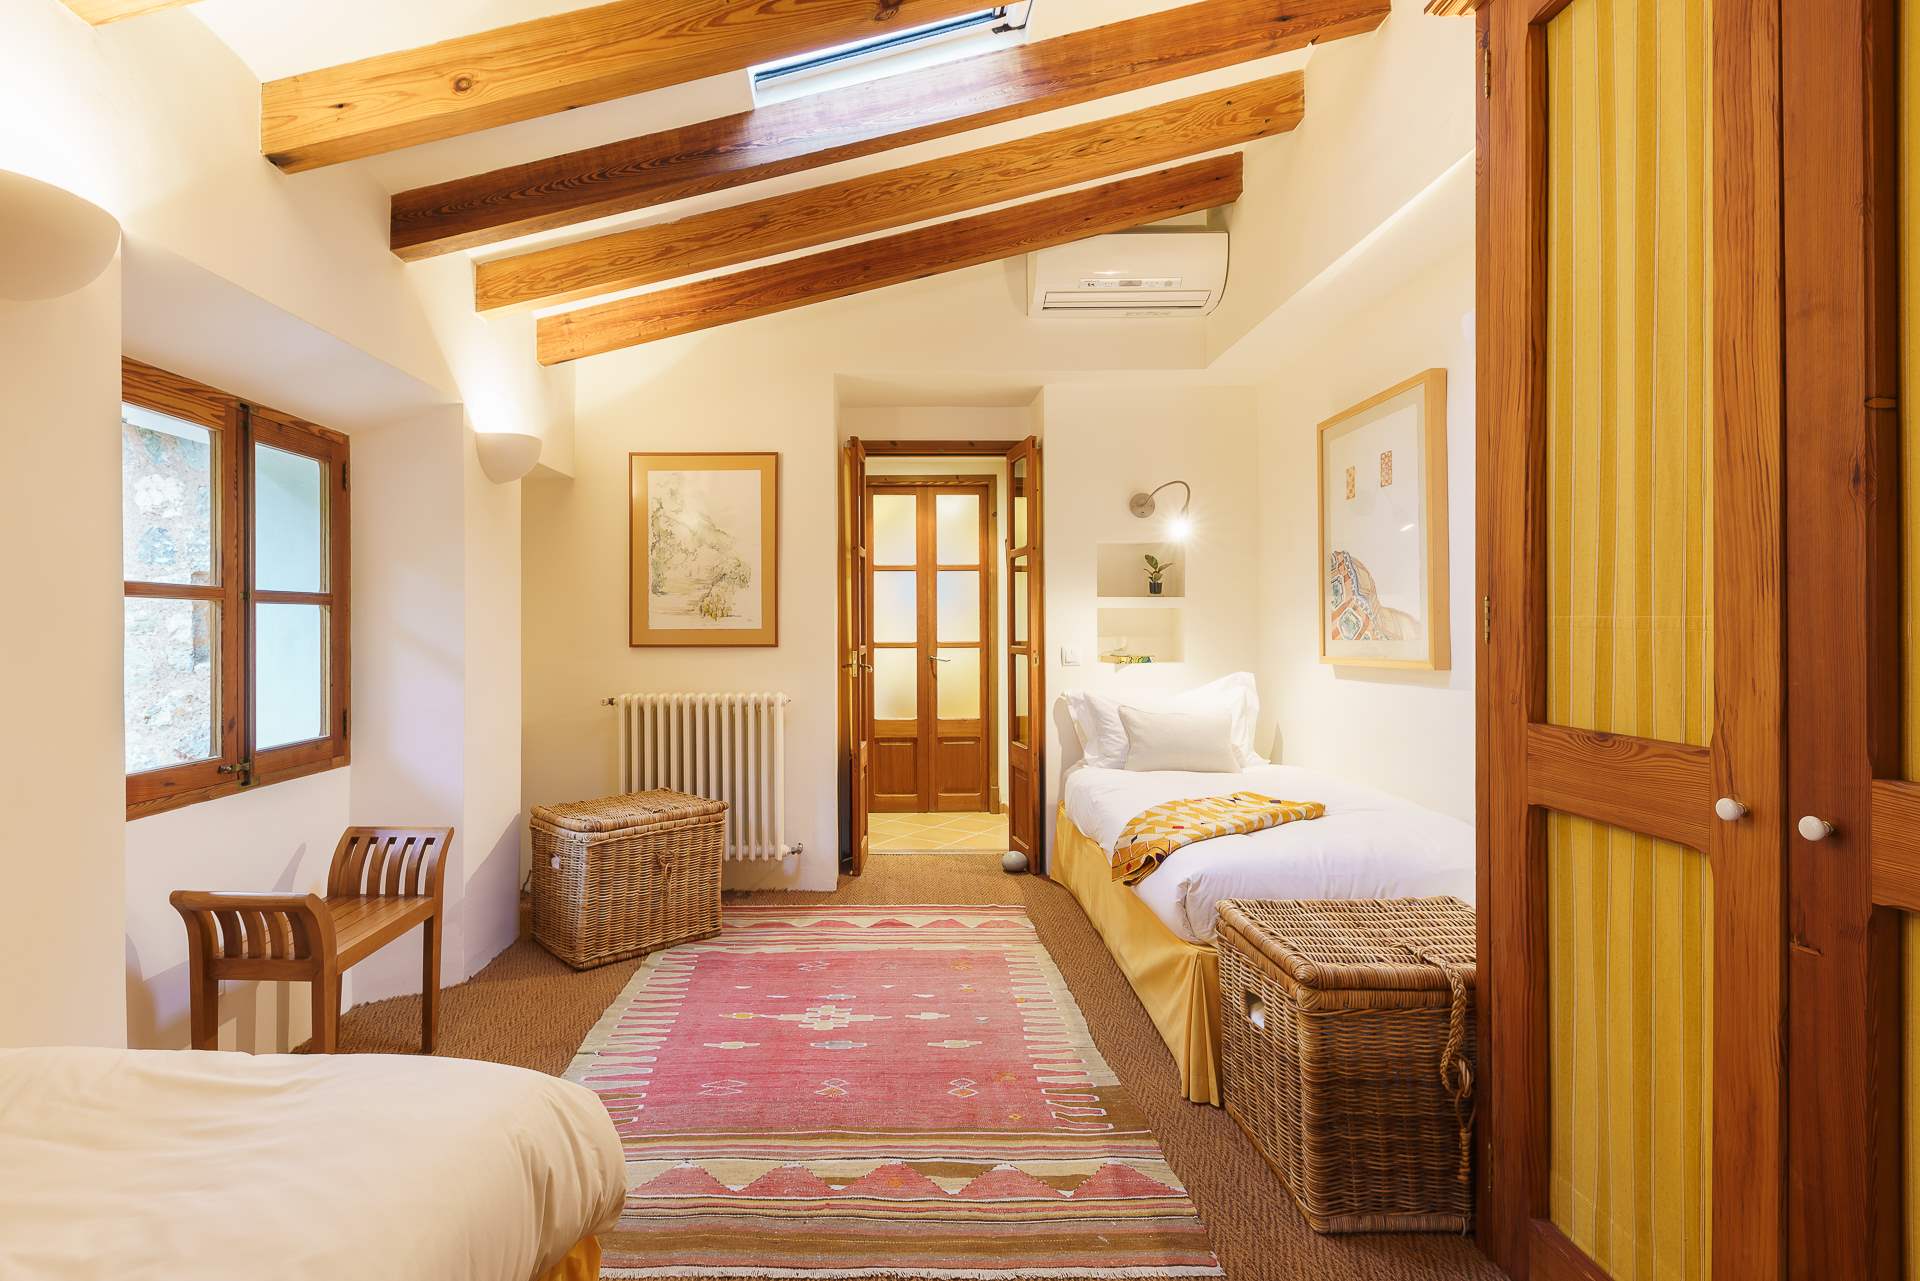 Sa Tanca, 4 Bedroom Rental, 4 bedroom villa in Soller & Deia, Majorca Photo #31